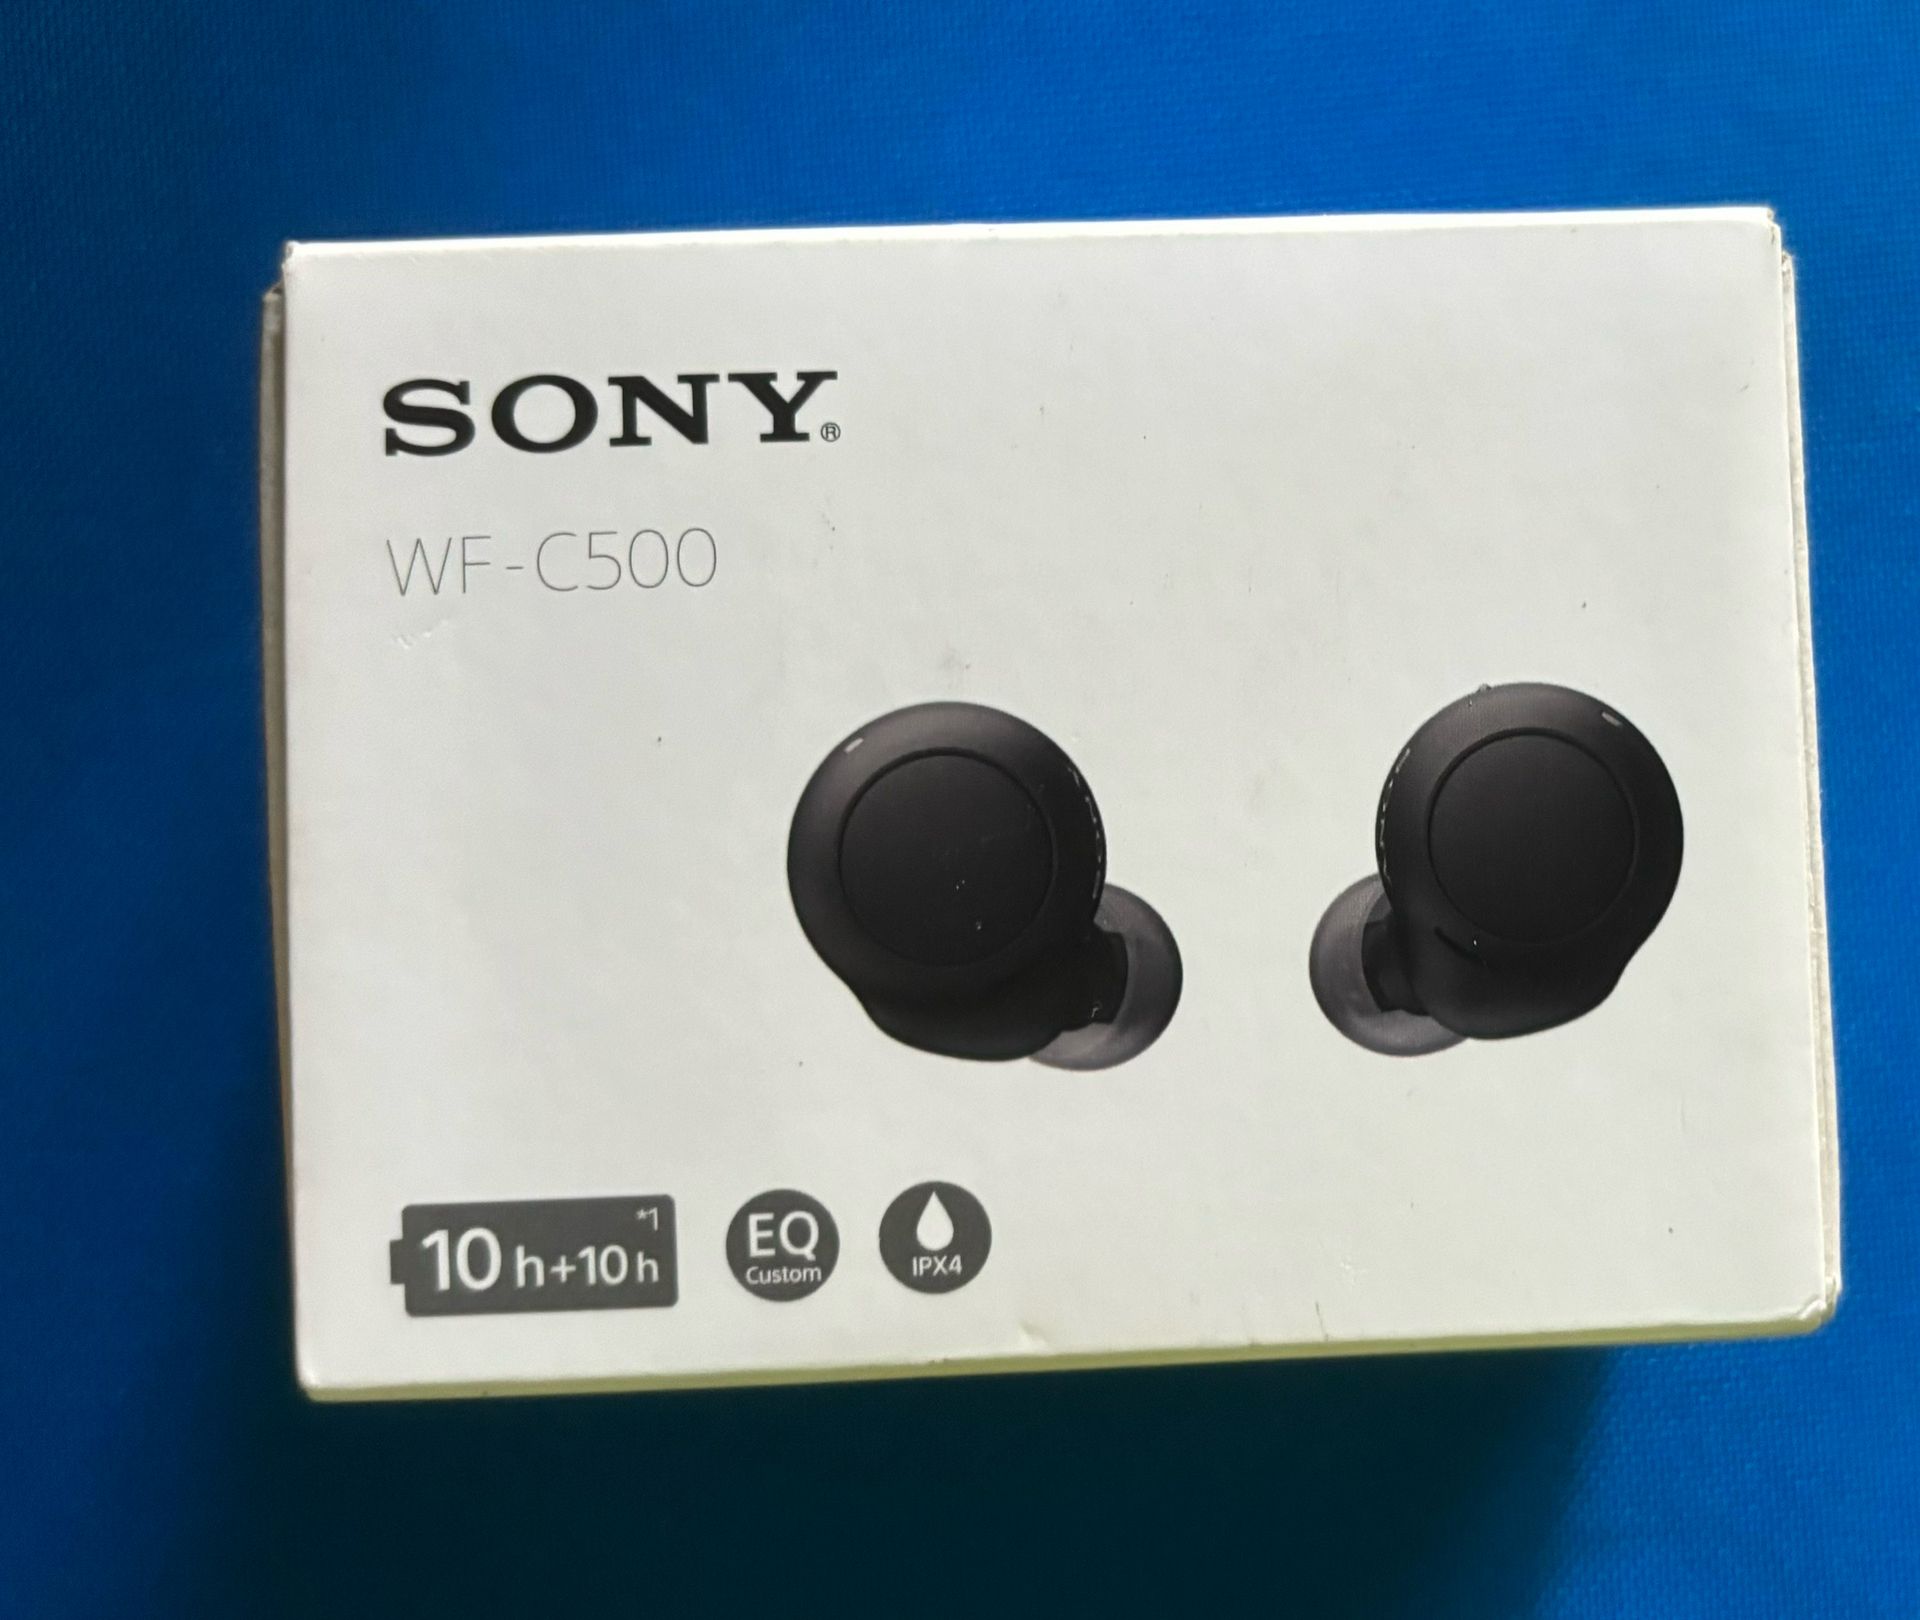 Sony WF-C500 Truly Wireless in-Ear Headphones, Black